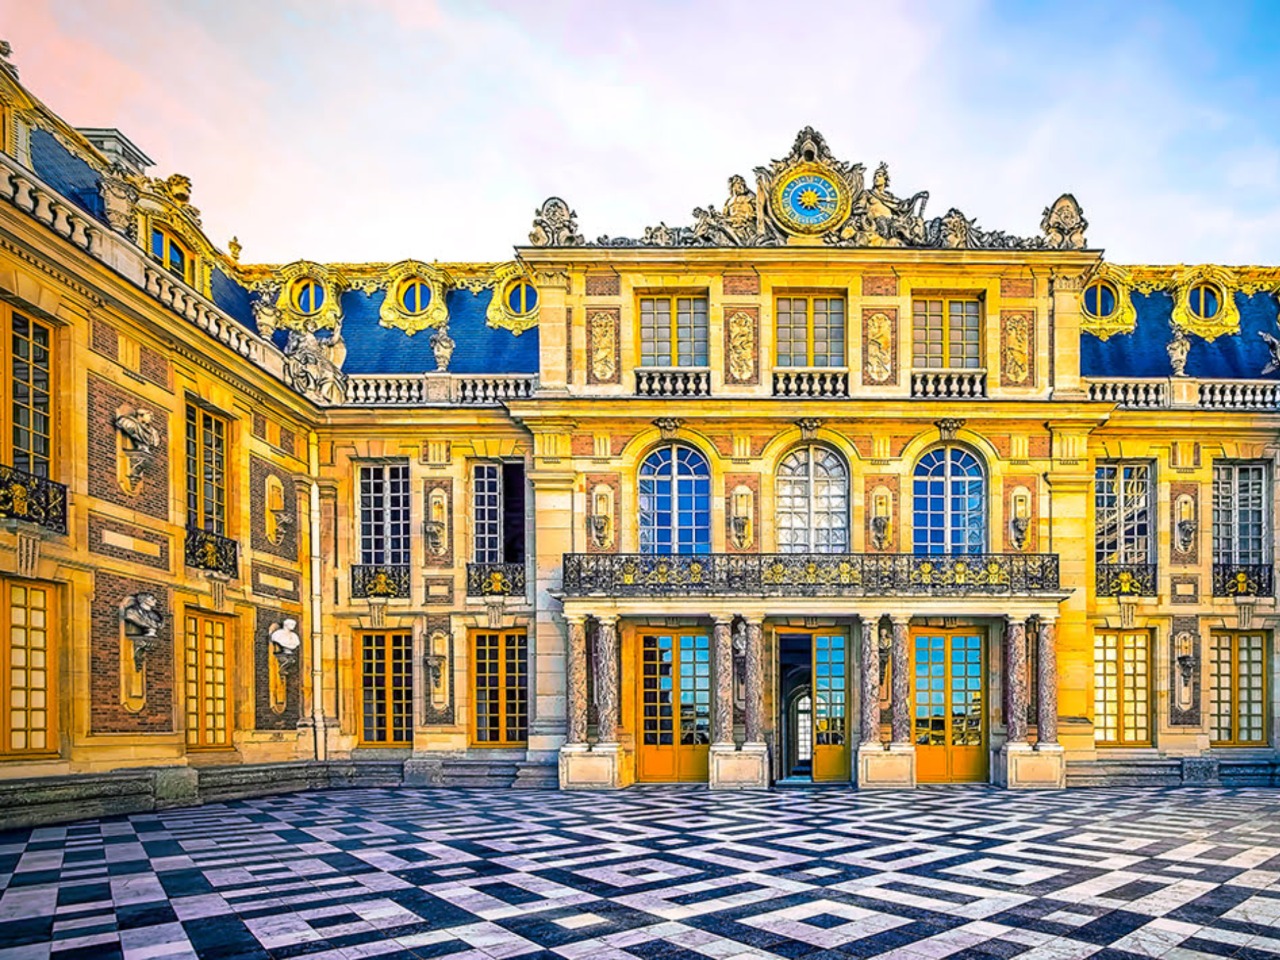 Жизнь королей в Версальском дворце  | Цена 440€, отзывы, описание экскурсии